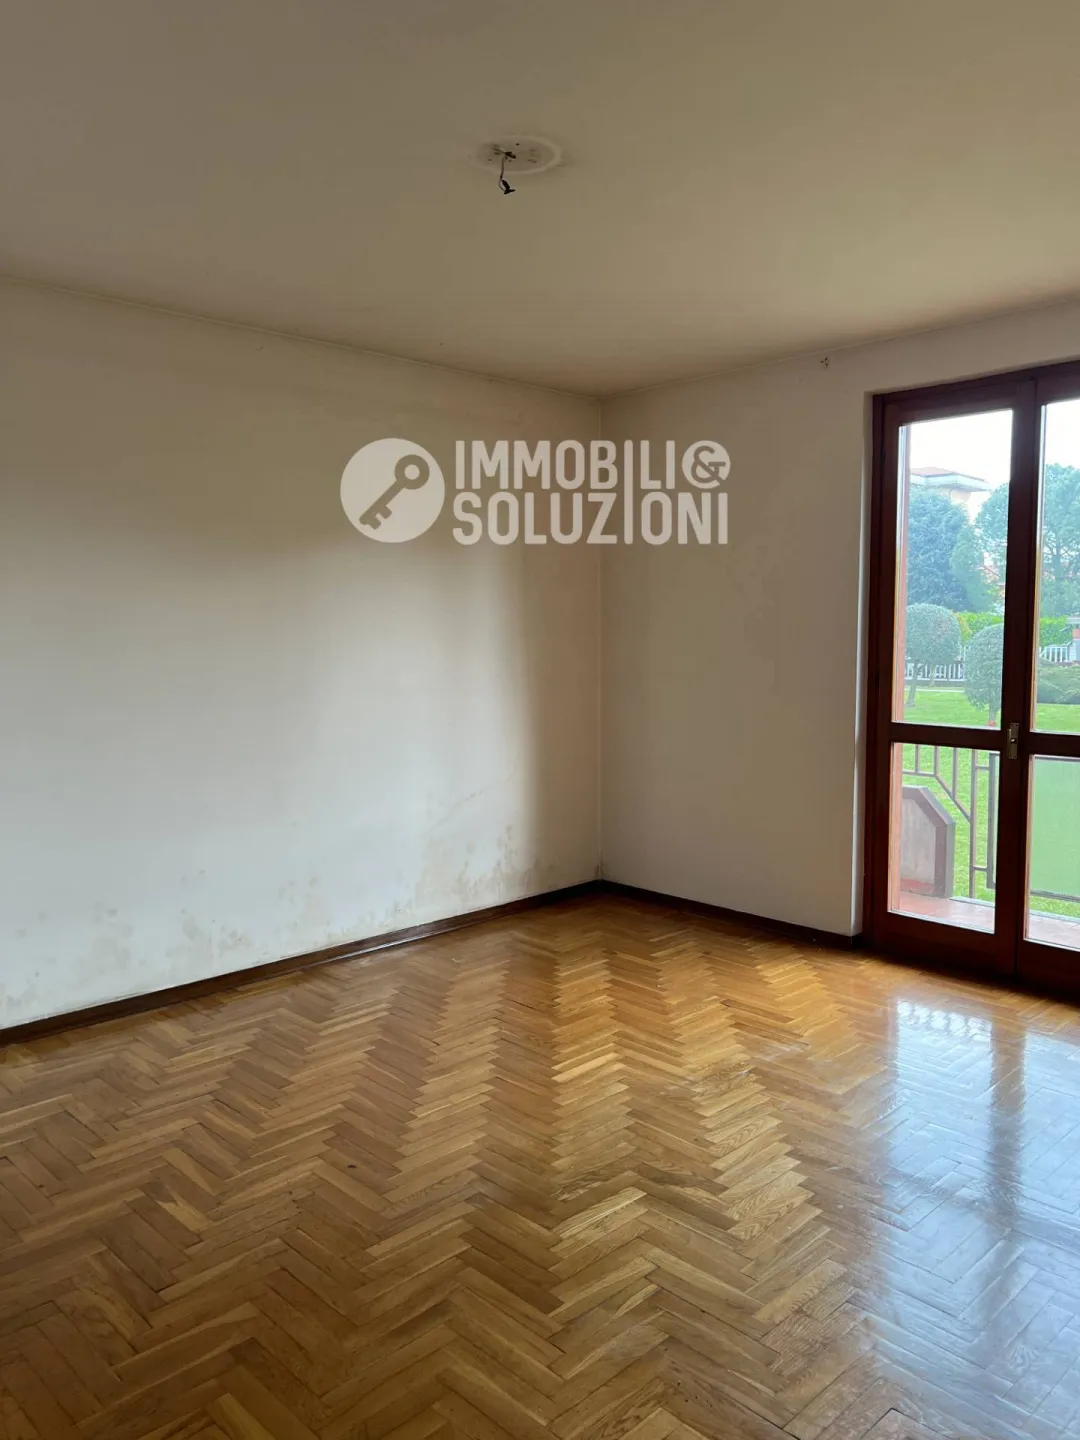 Immagine per Appartamento in vendita a Pontirolo Nuovo via Matteotti